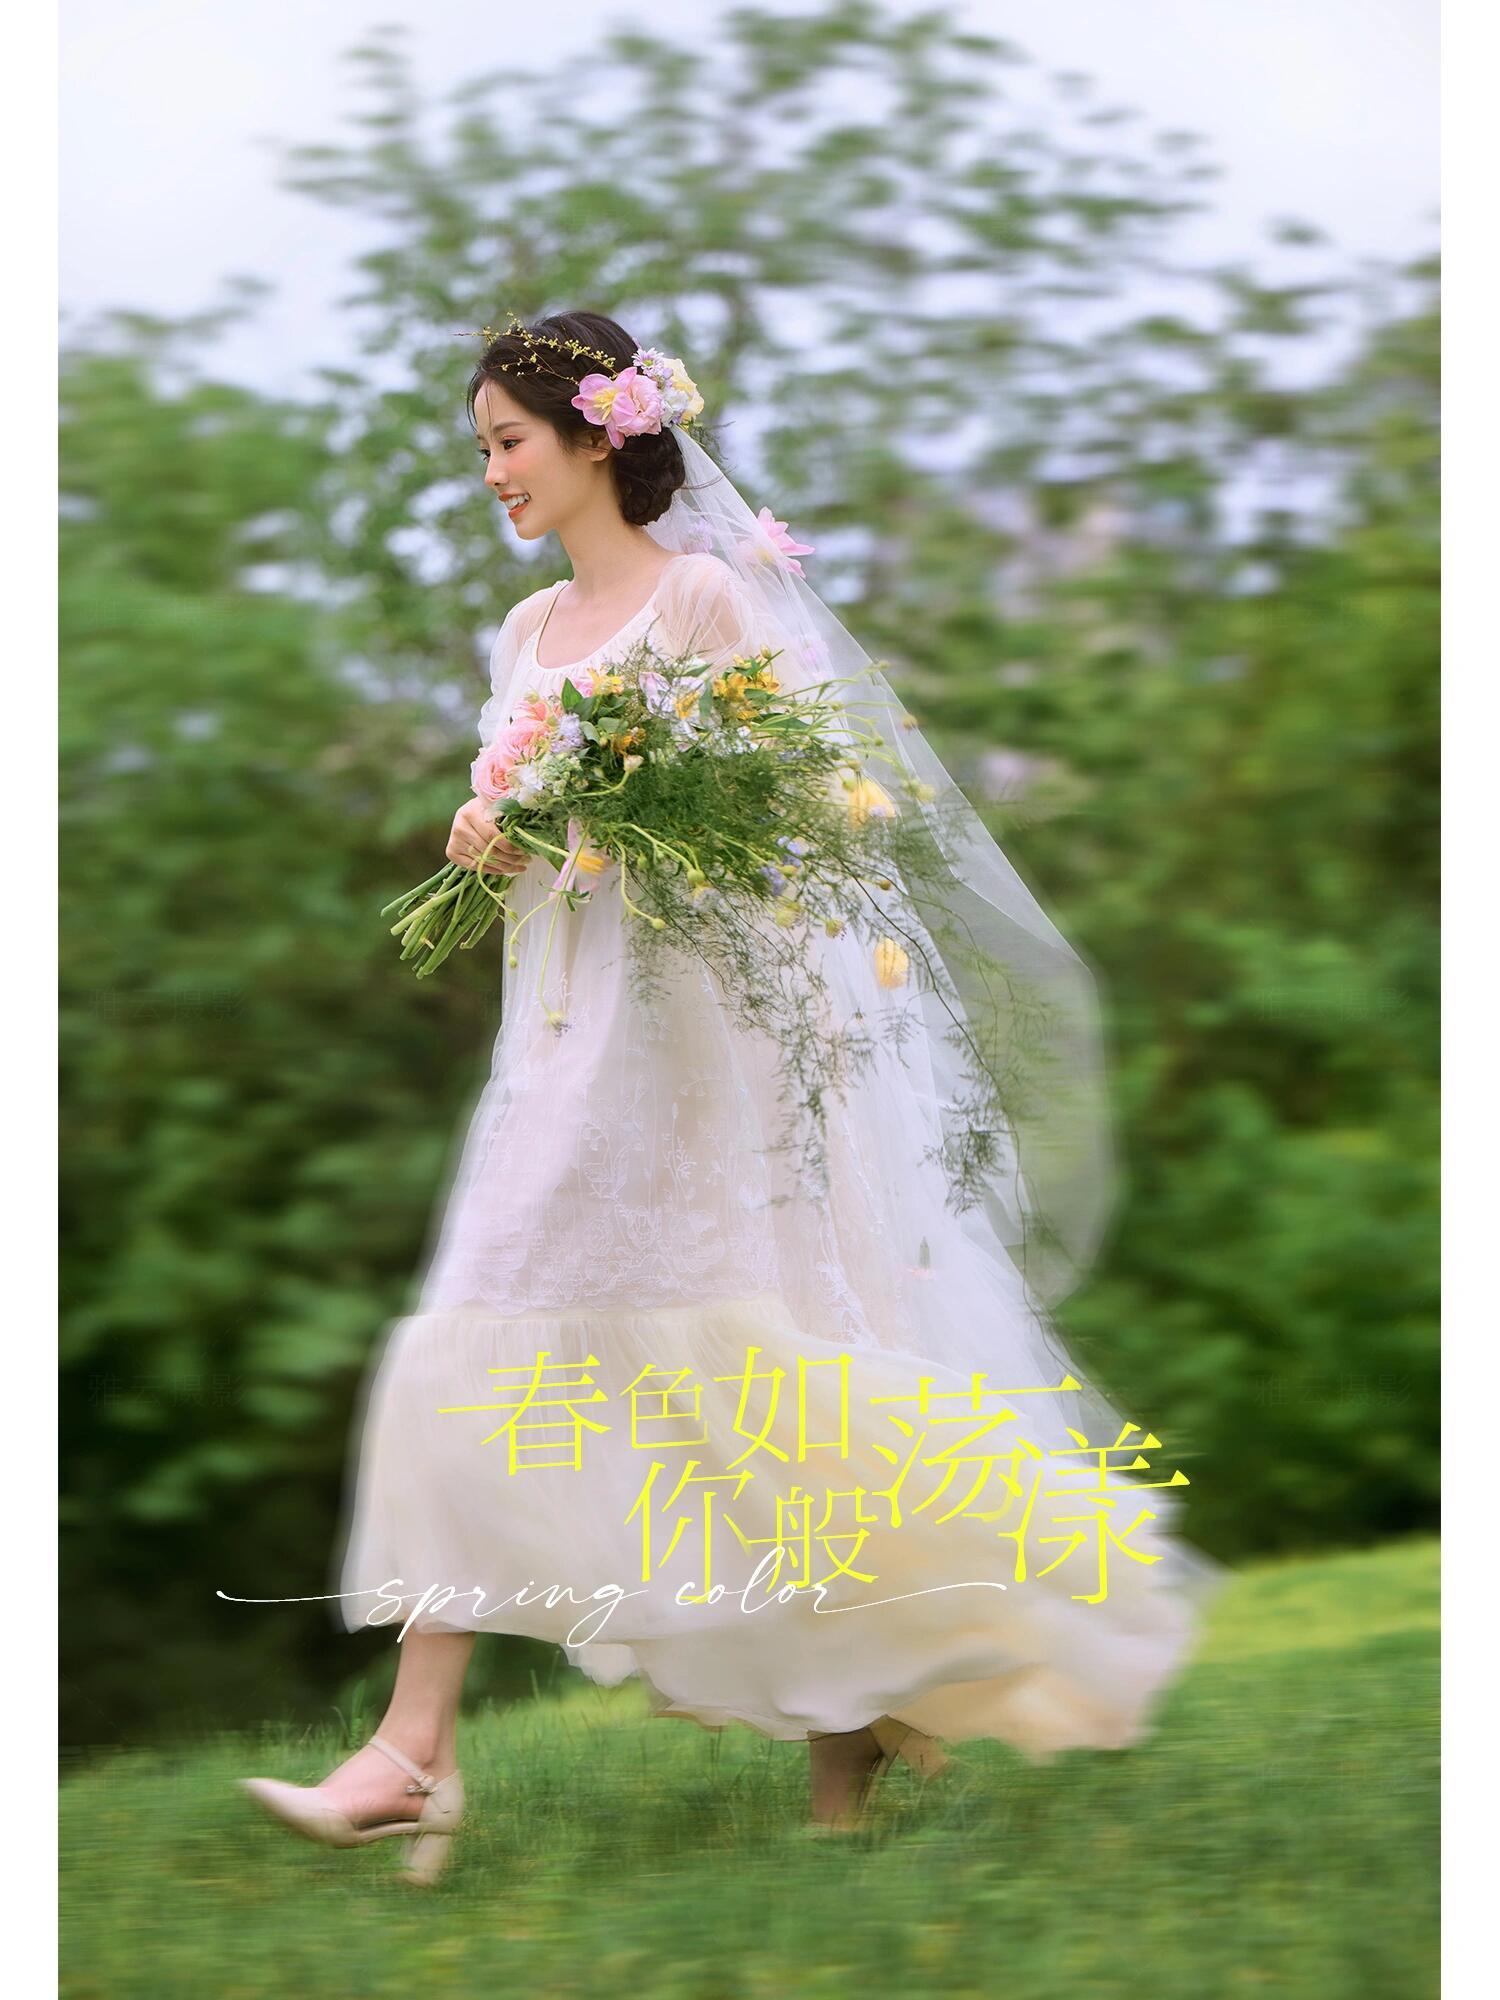 被鲜花包围的少女🌸初夏的草坪婚纱照好精致